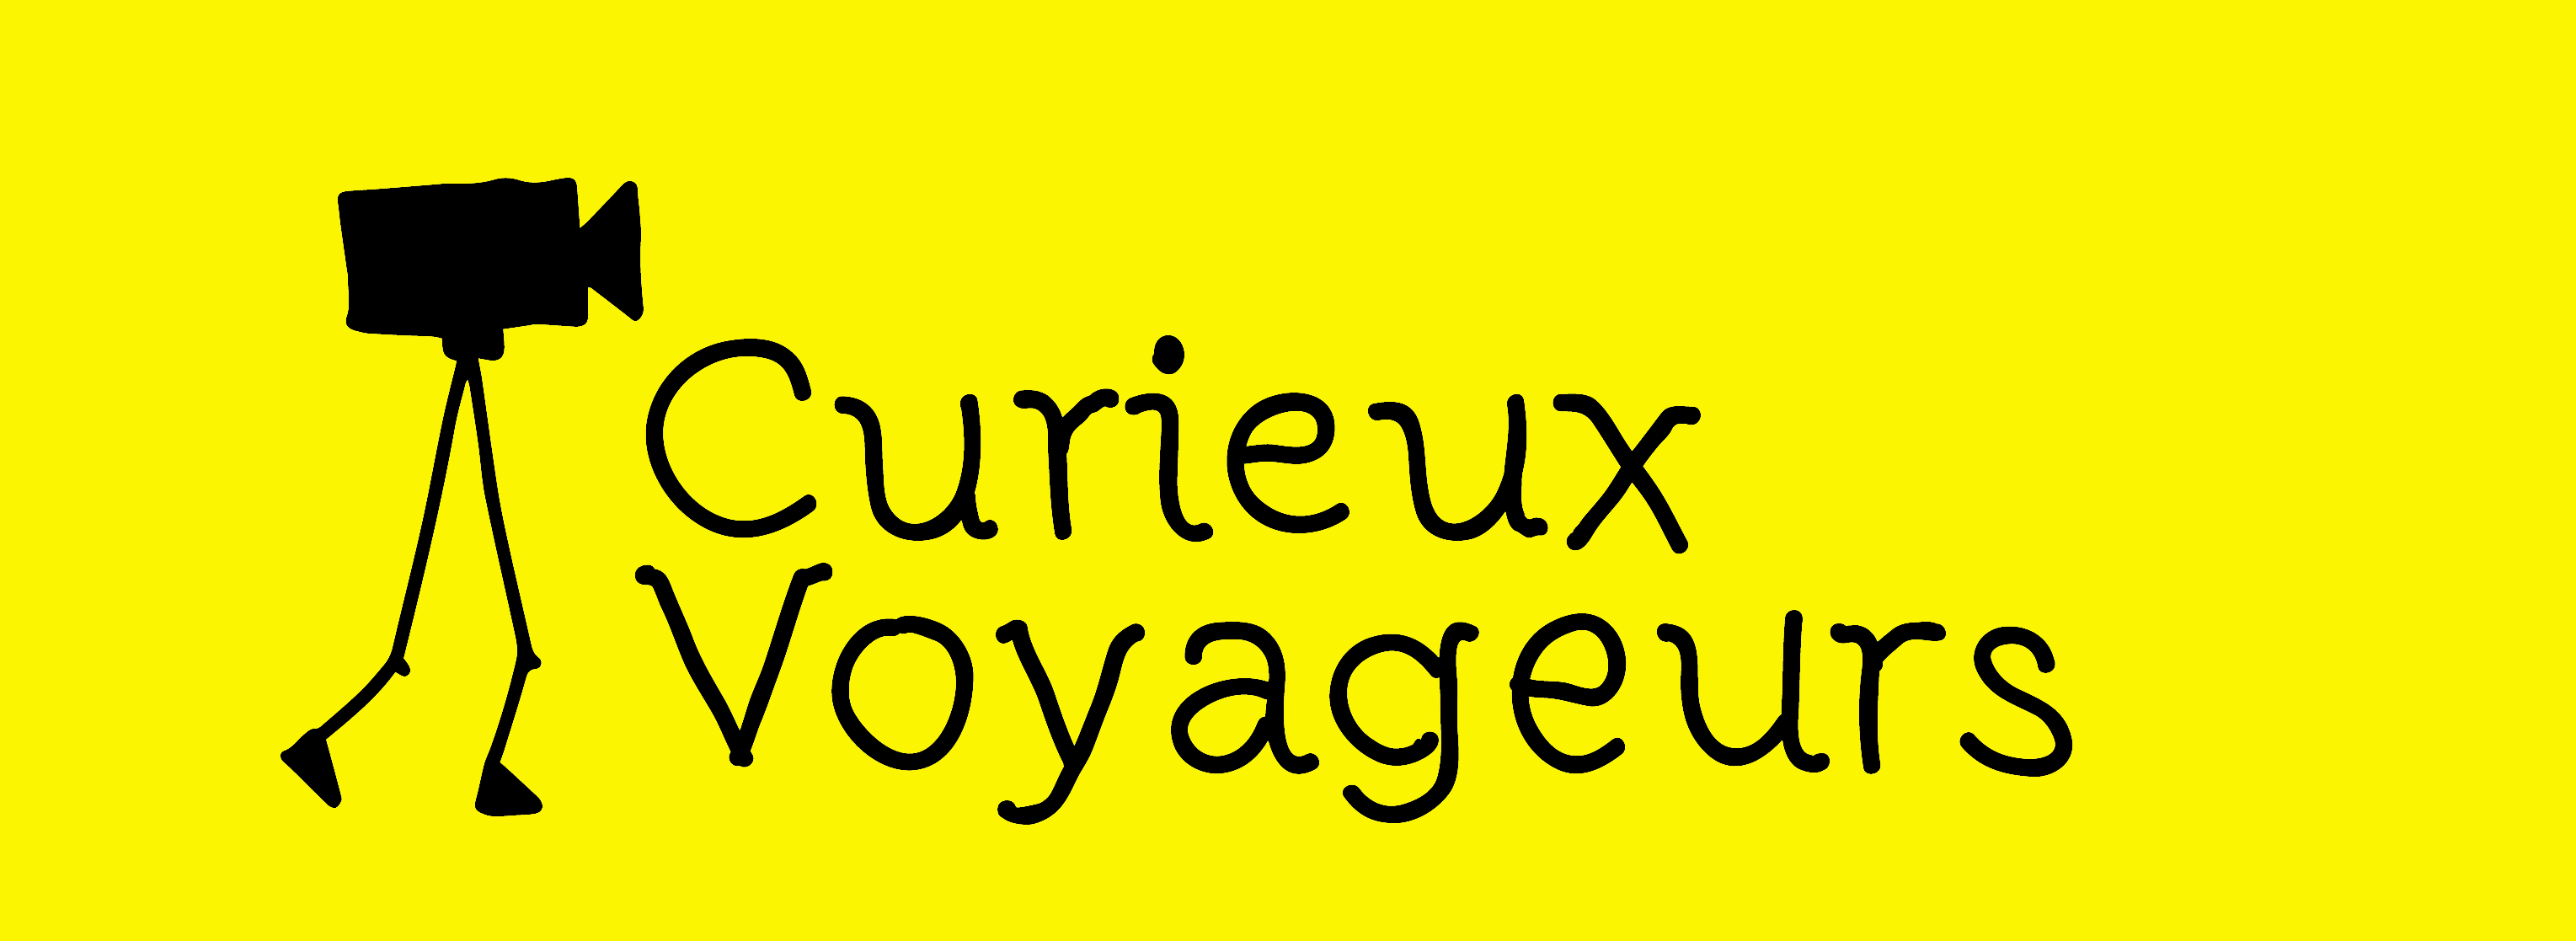 Festival Curieux Voyageurs : voyages en 9,5 mm | 